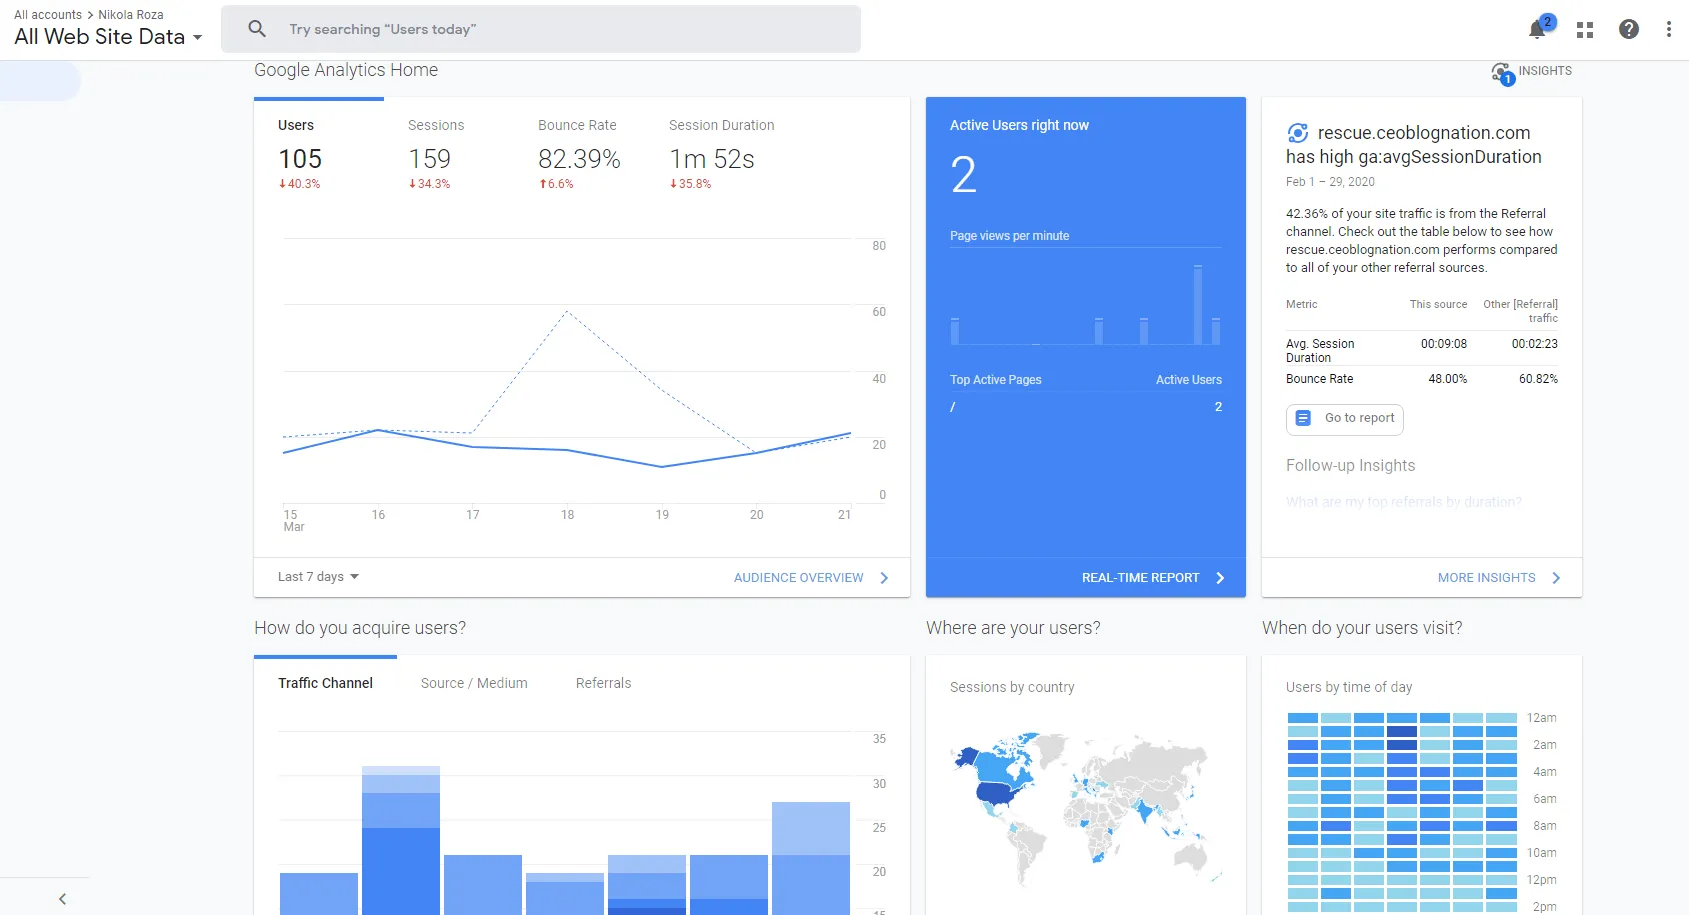 Google Analytics homepage